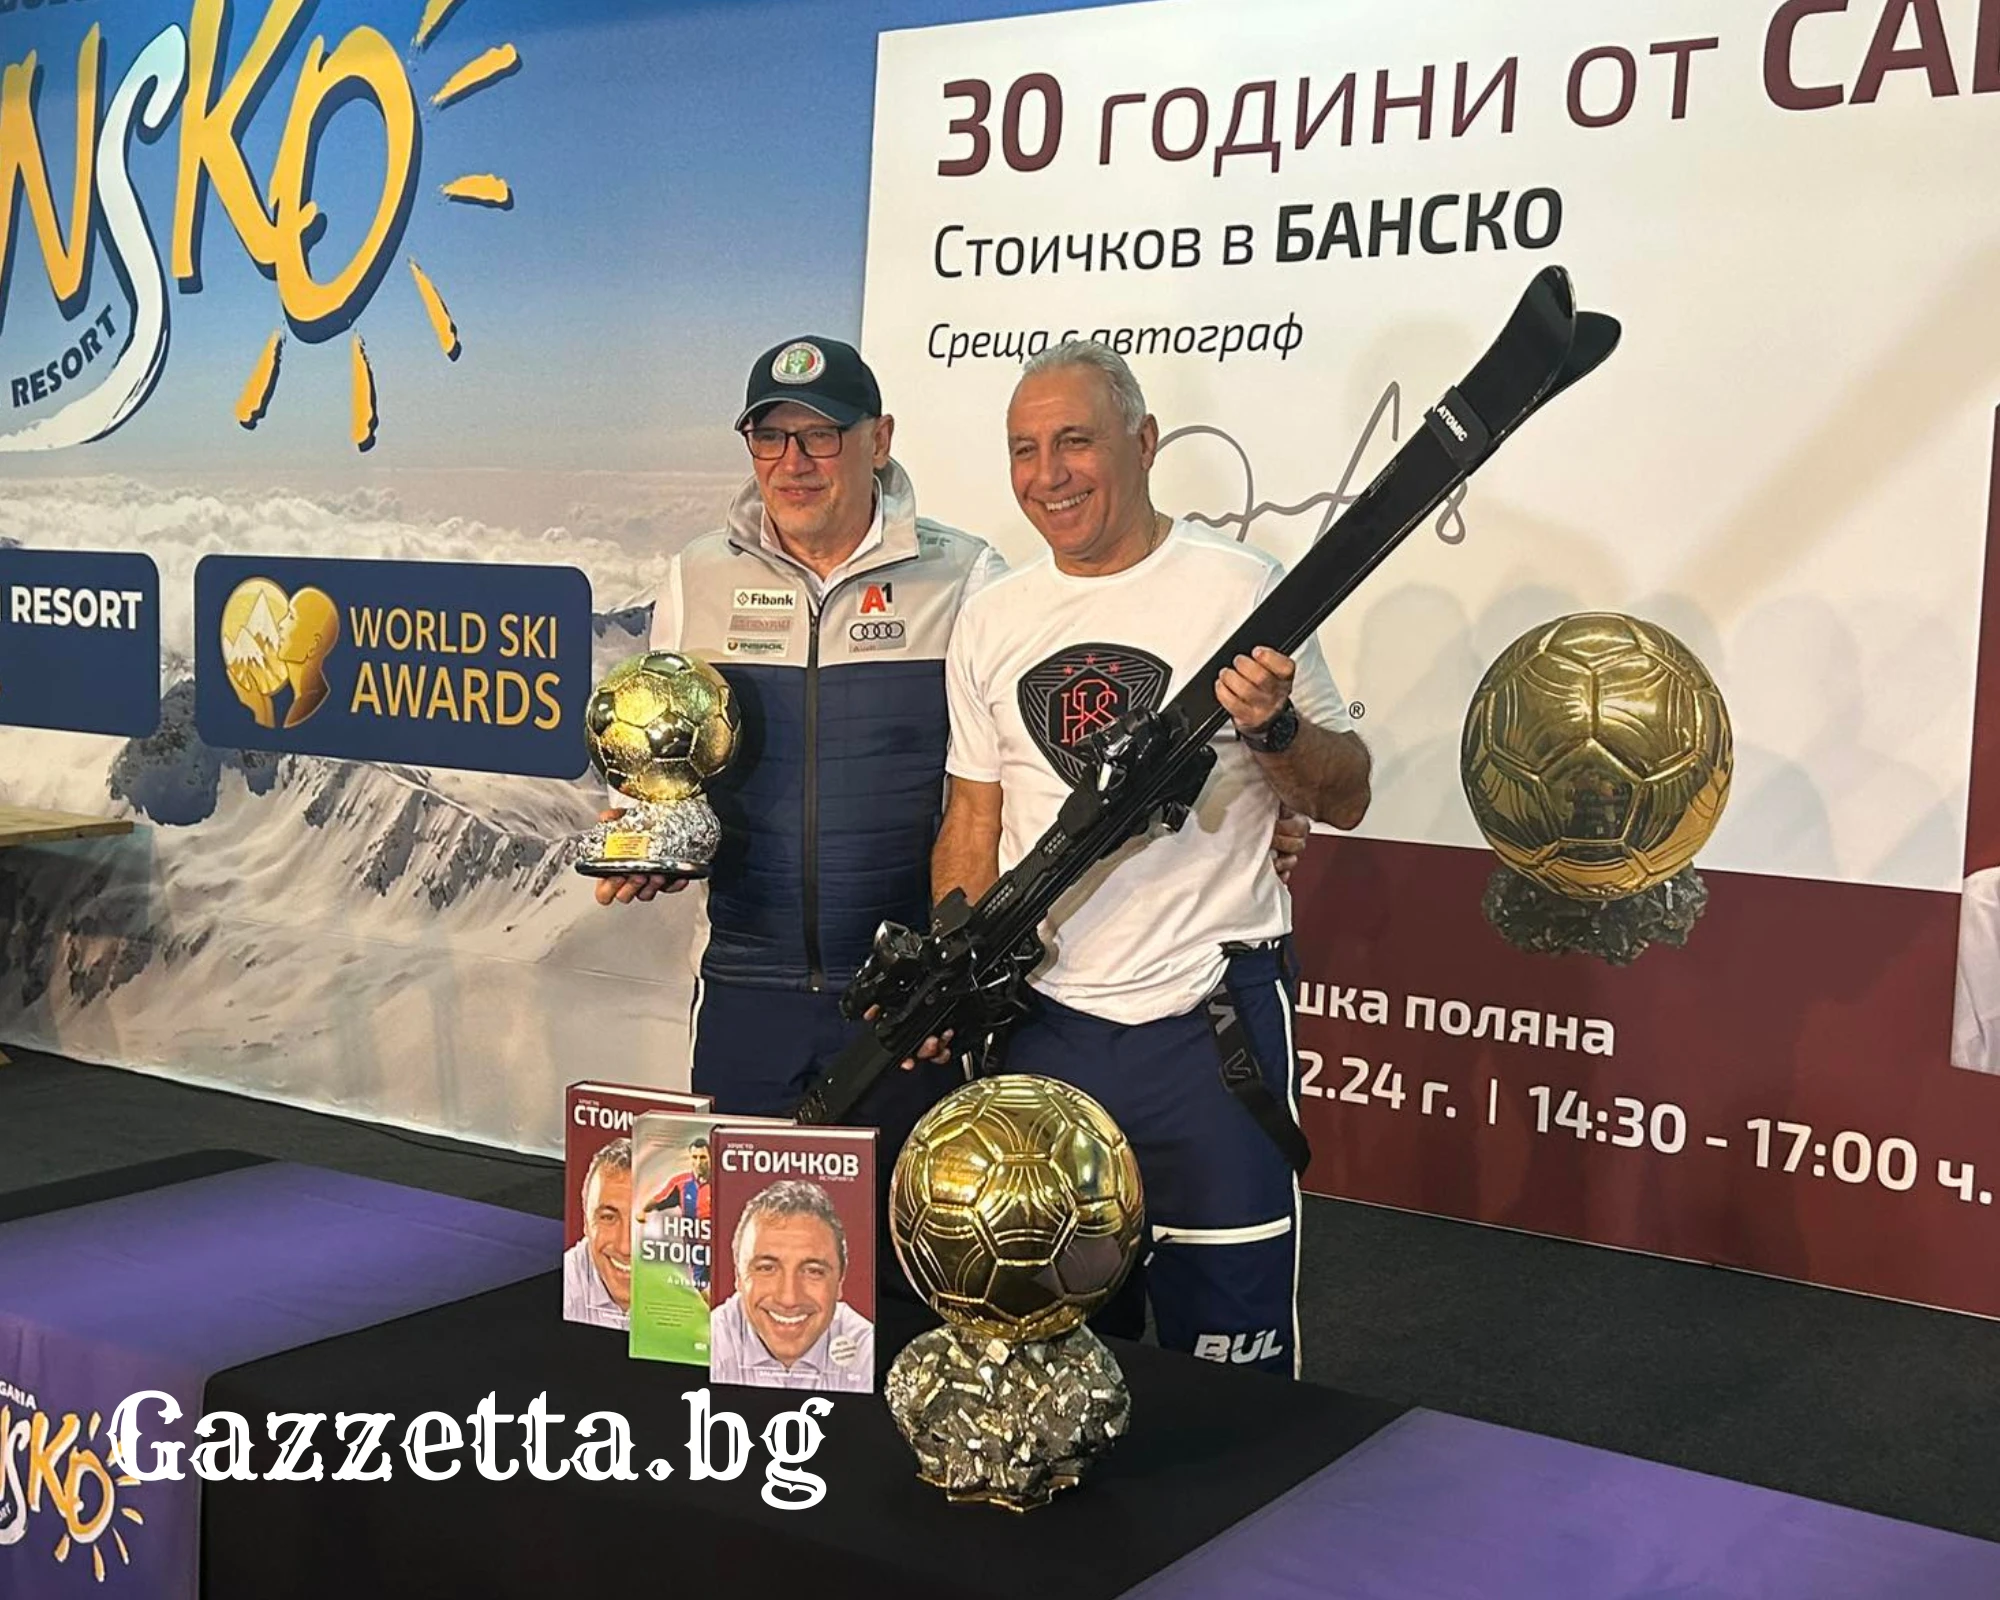 Христо Стоичков подлуди български и чуждестранни туристи в Банско